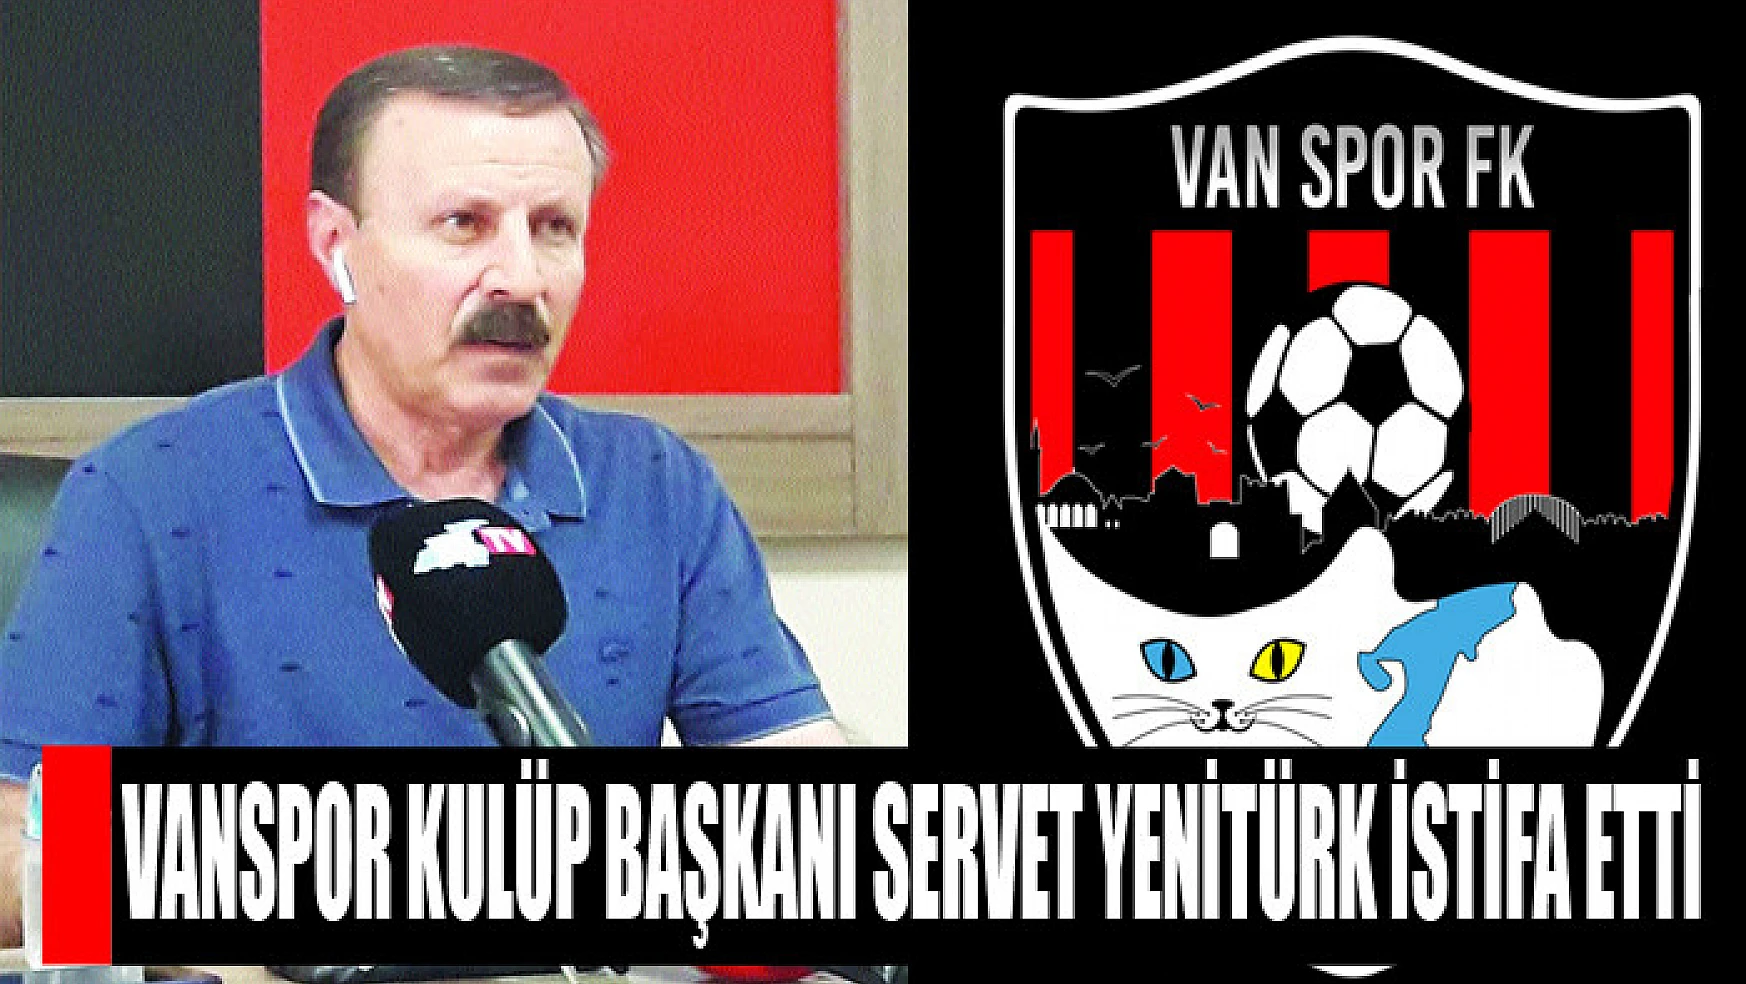 Vanspor Kulüp Başkanı Servet Yenitürk istifa etti